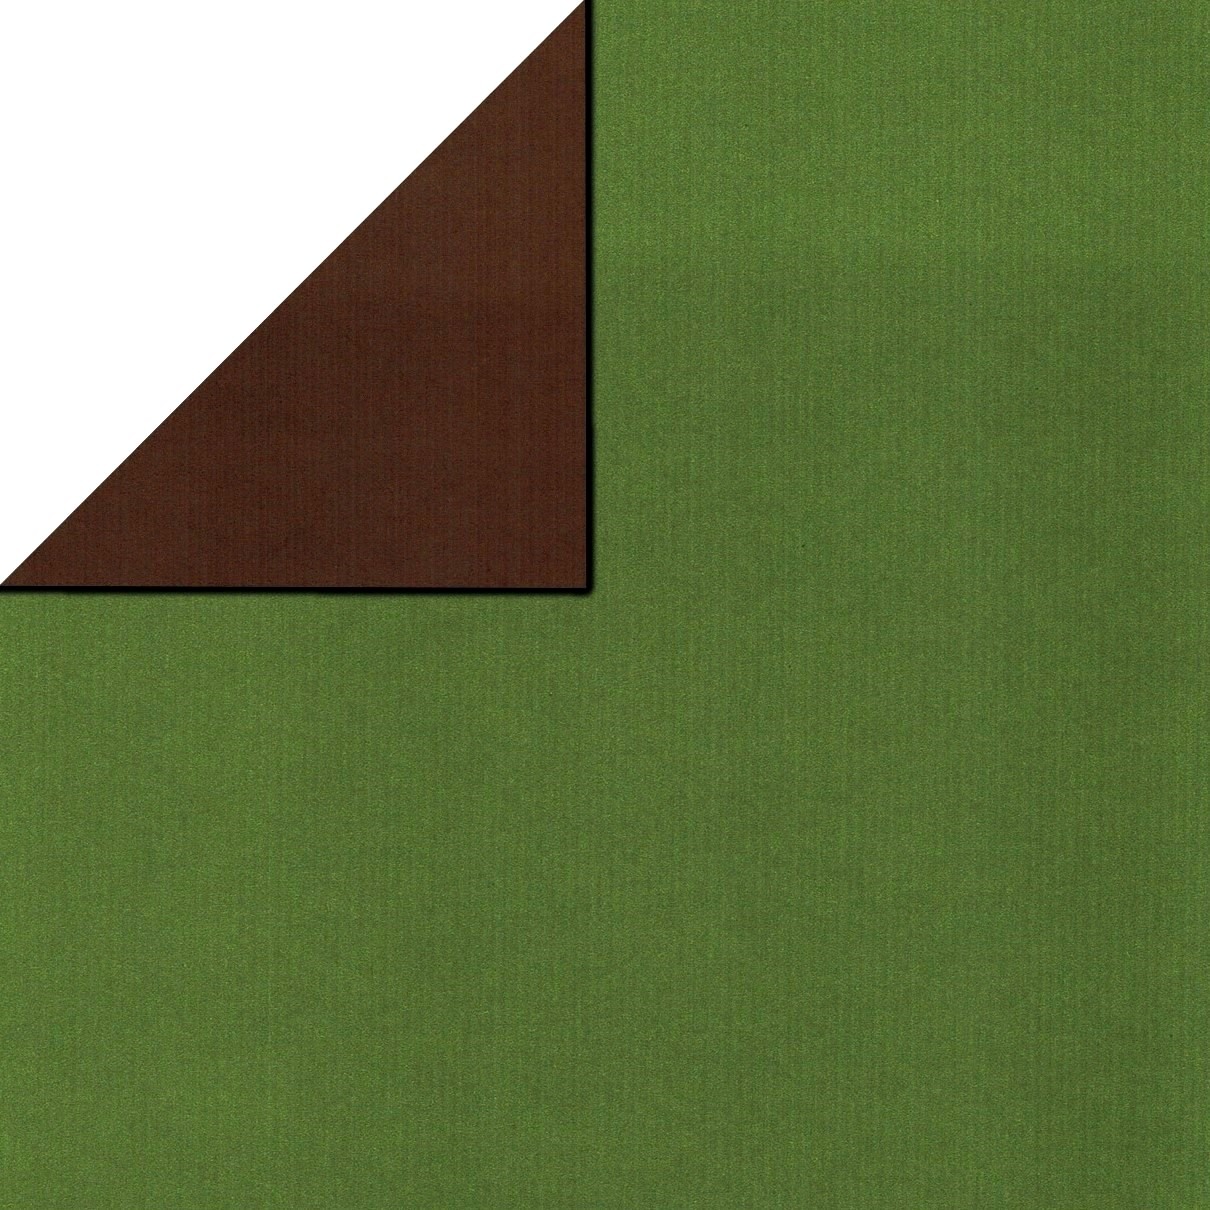 Geschenkpaper vorne uni olivgrün, hinten uni braun auf geripptes mattes starkes papier.
 